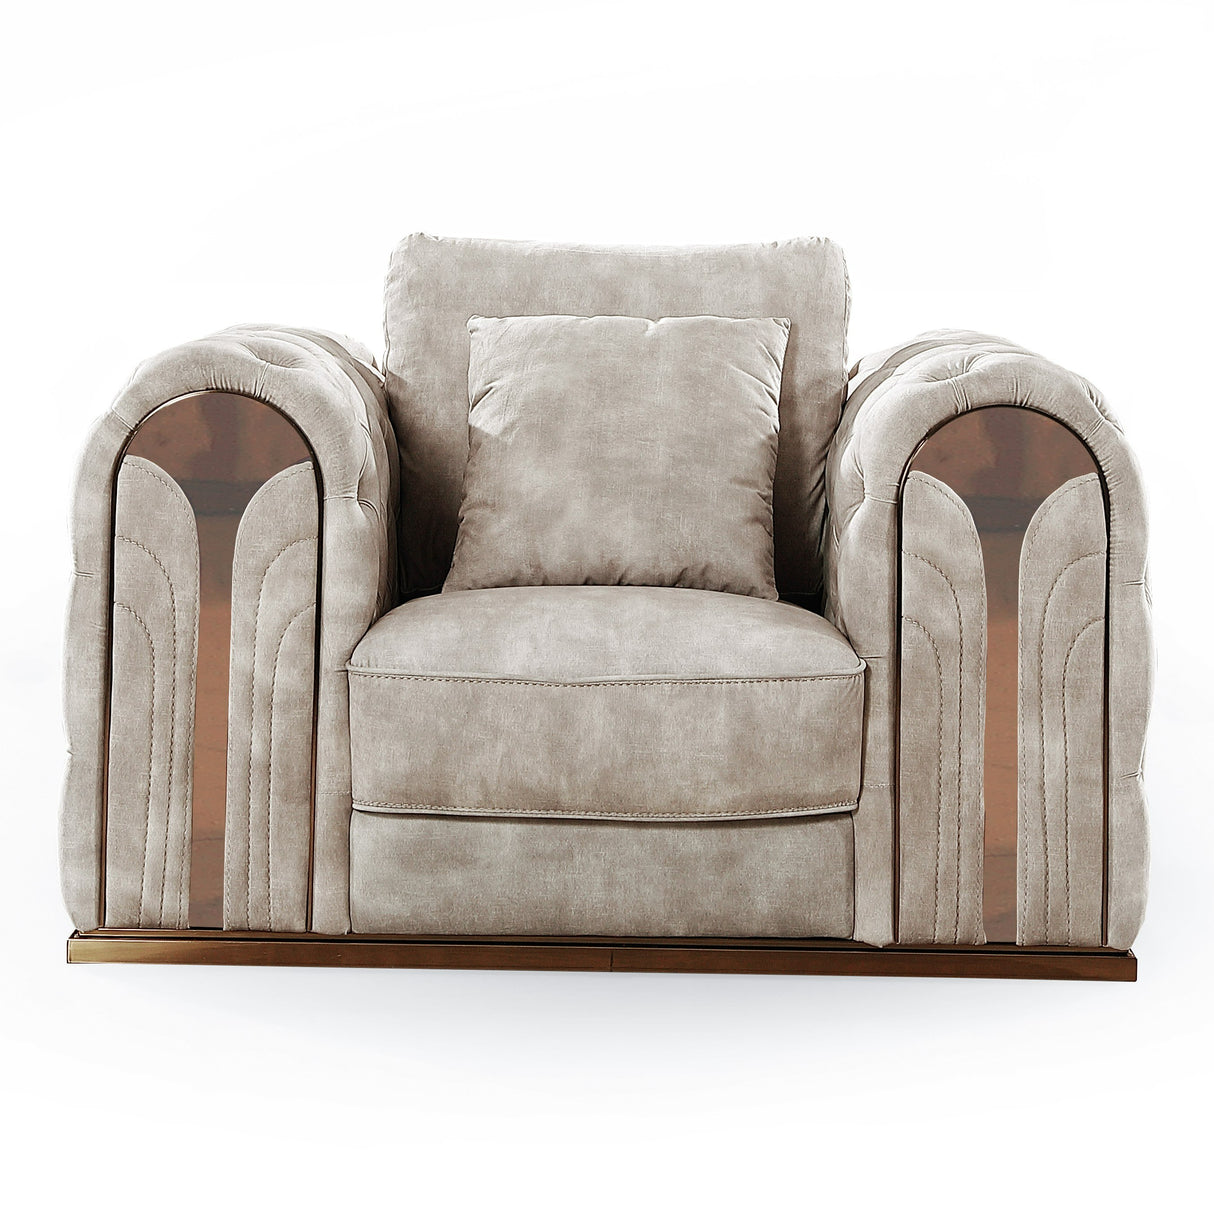 Vig Furniture Divani Casa Dosie - Transitional Beige Velvet Chair